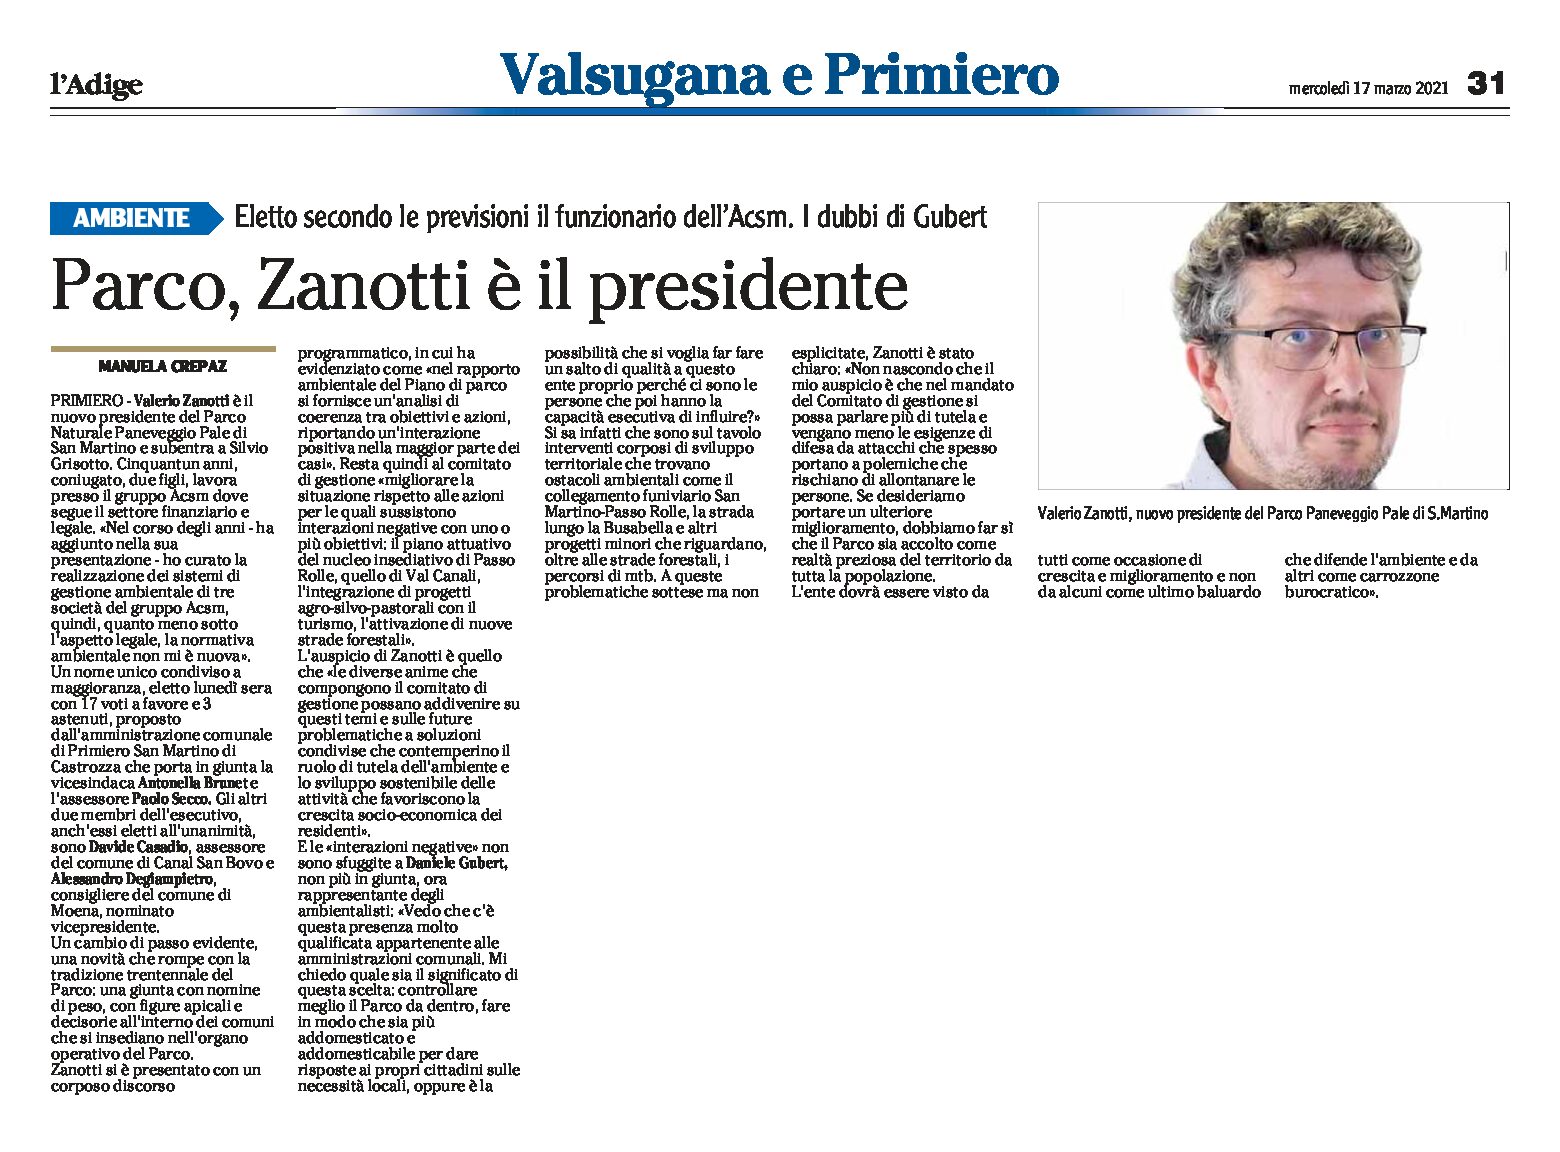 Paneveggio: Zanotti è il nuovo presidente del Parco